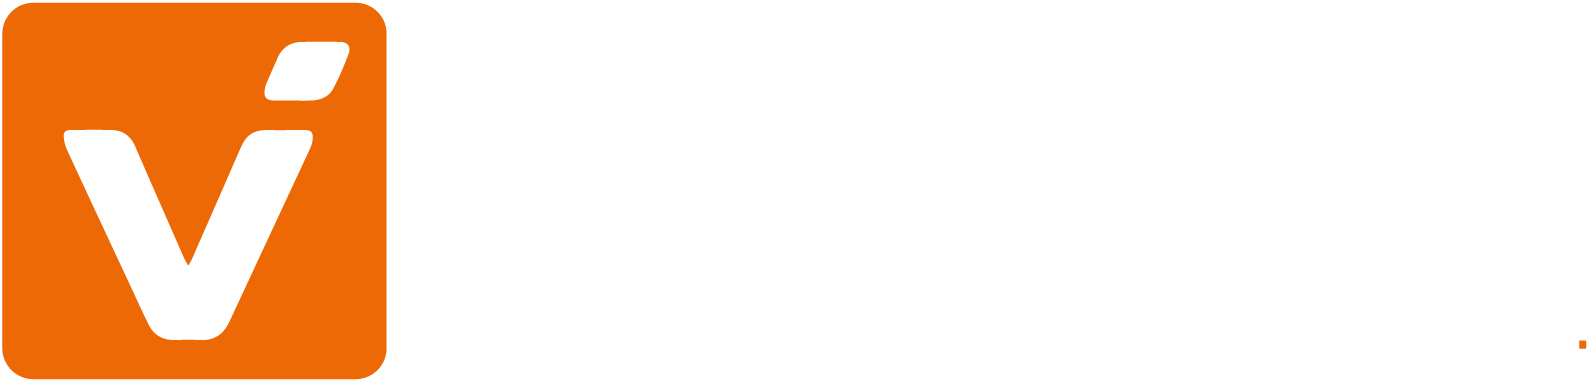 VM-eigenes-CD-Logo-20200225-10